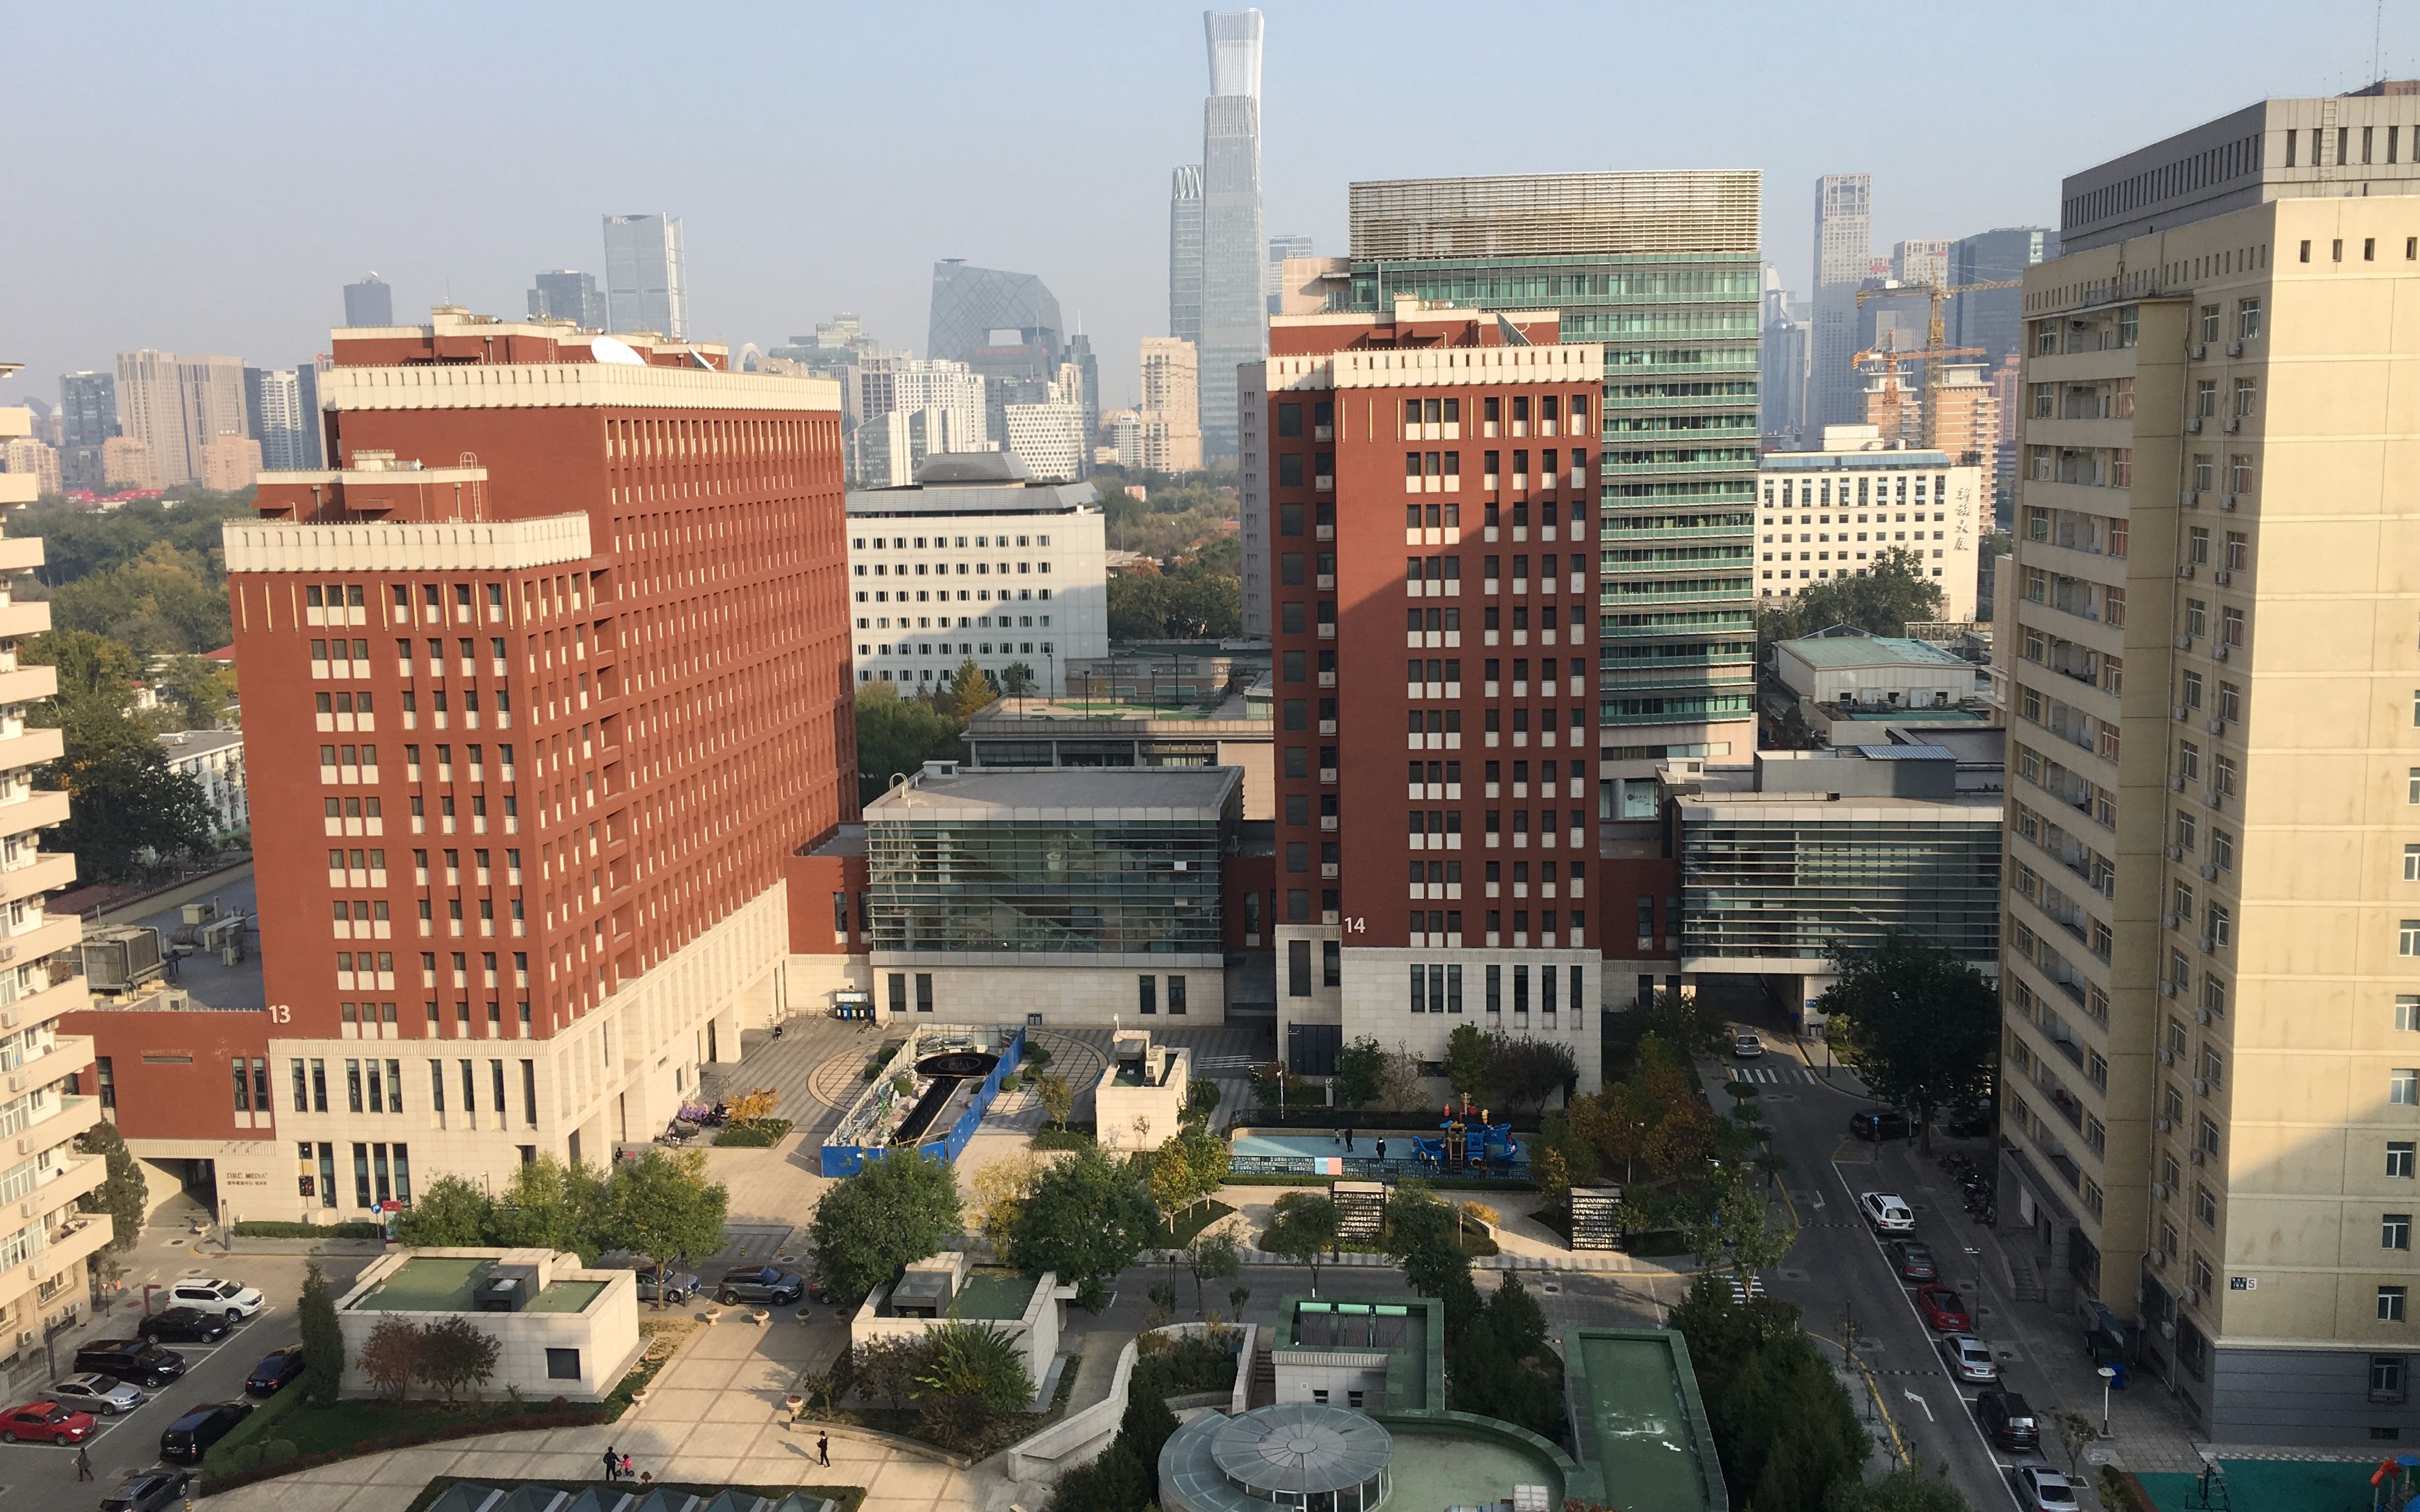 北京三里屯外交公寓图片